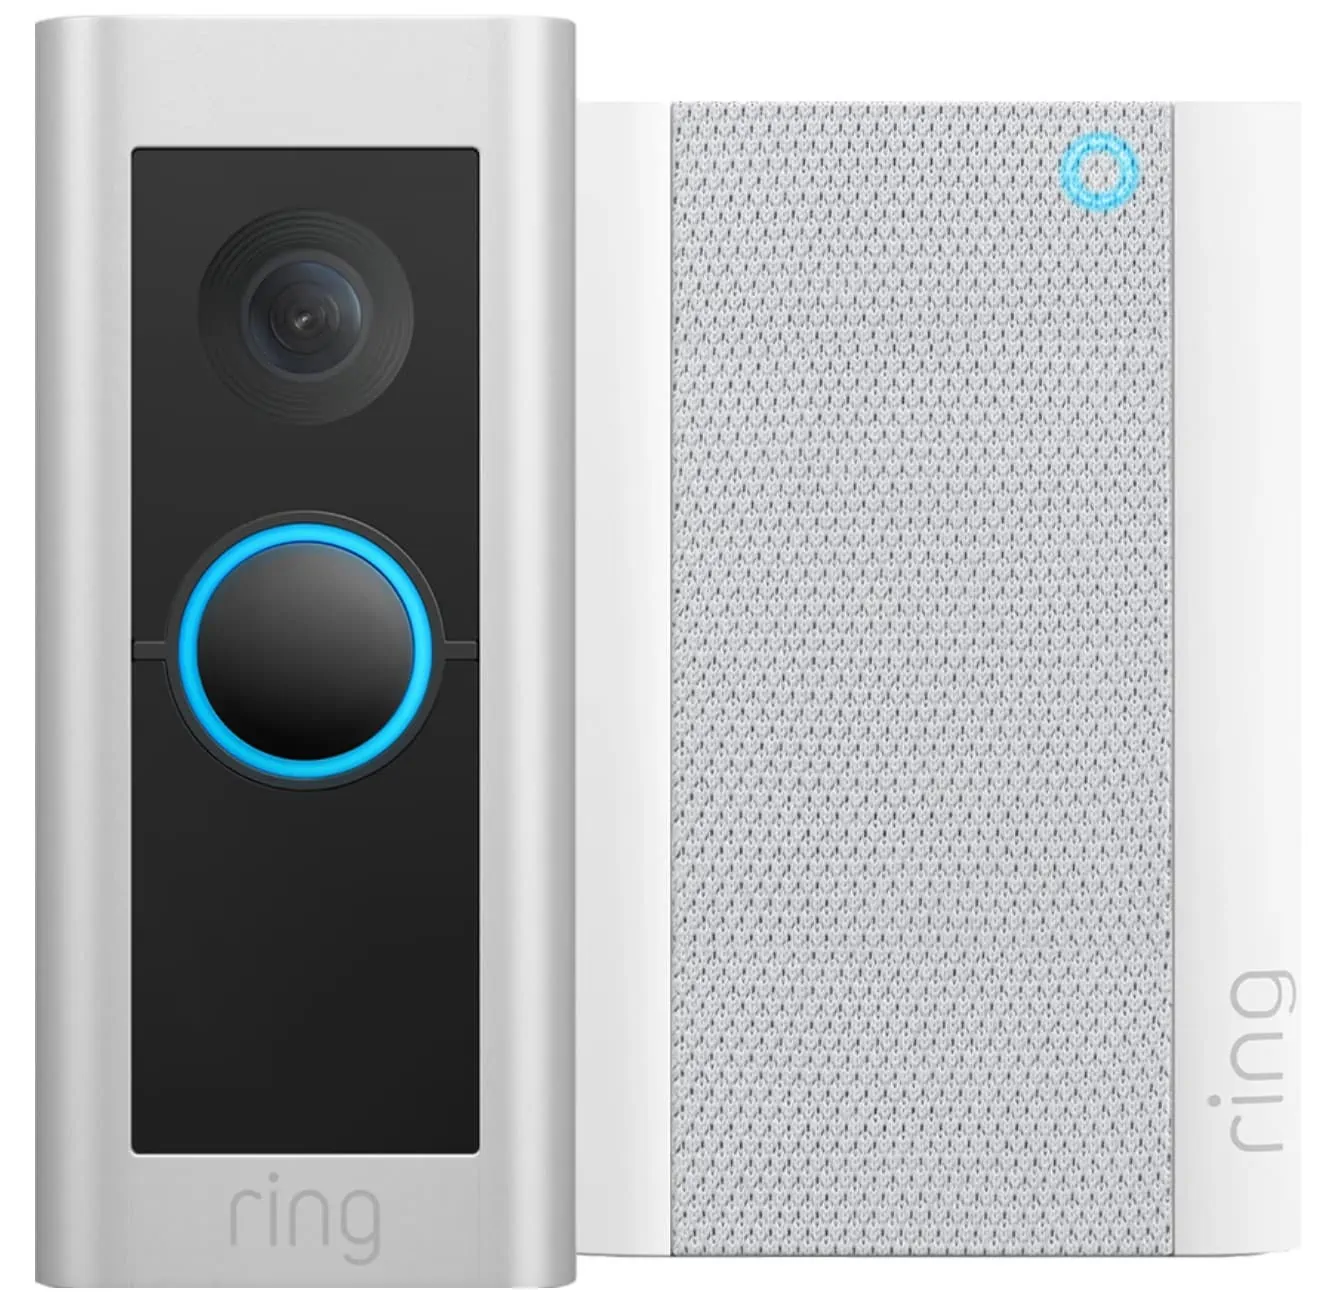 Ring Video deurbell pro 2 wired- met chime